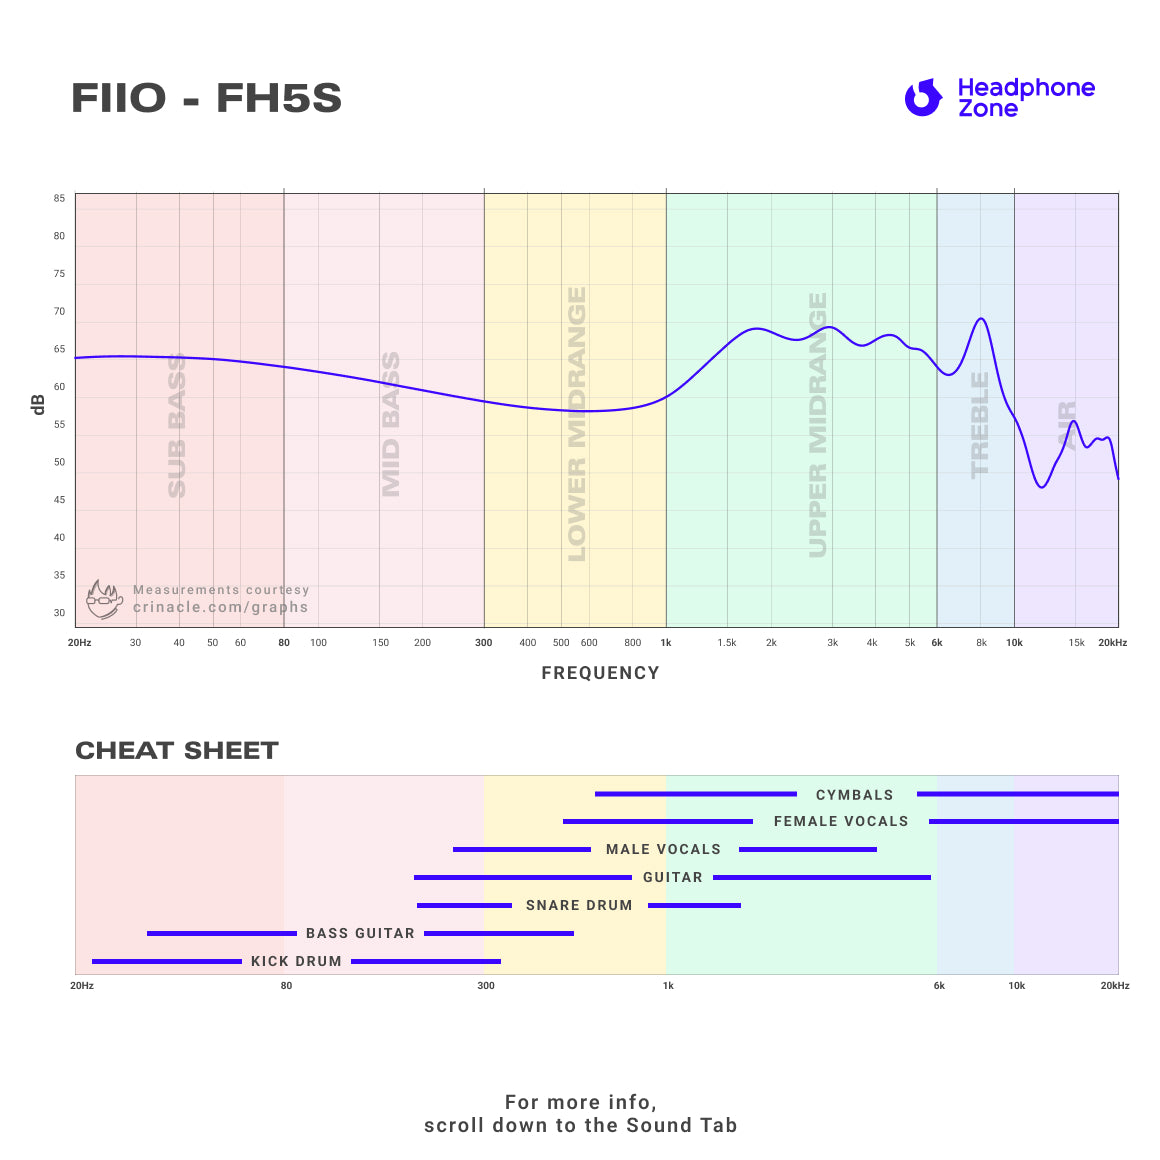 FiiO - FH5s